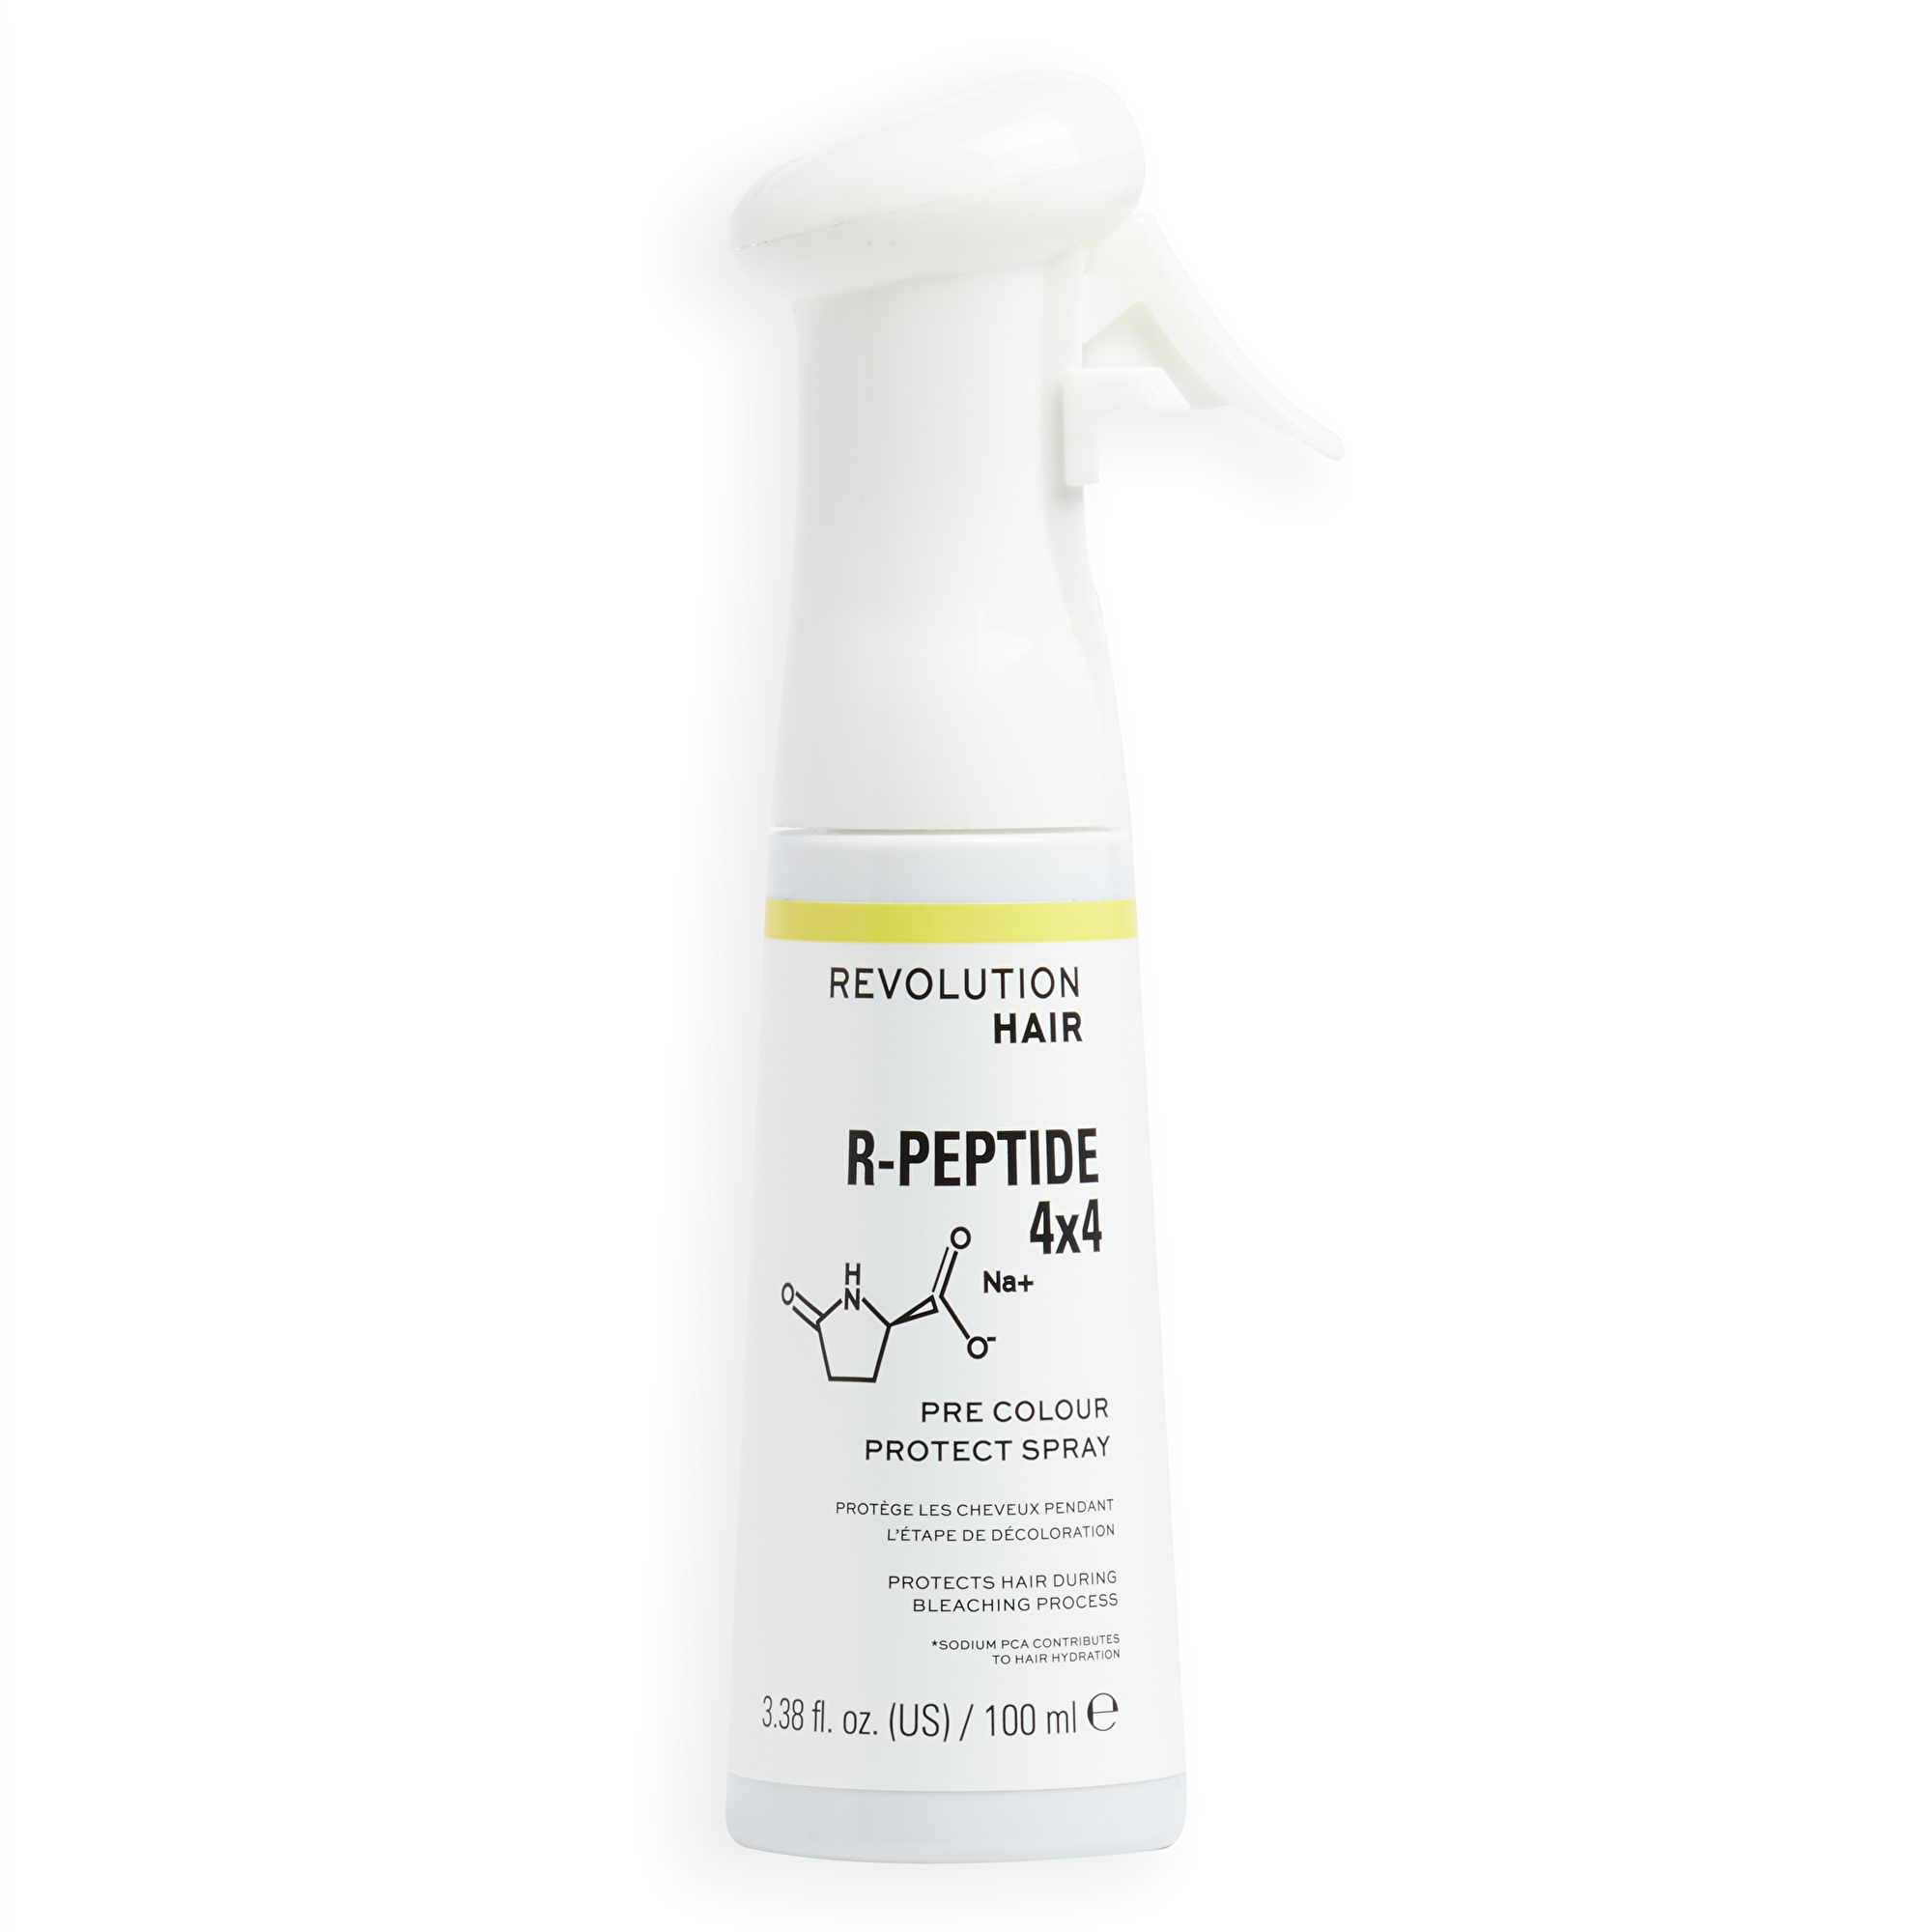 Revolution Haircare Ochranný sprej na vlasy R-Peptide 4x4 (Pre-Colour Protect Spray) 100 ml